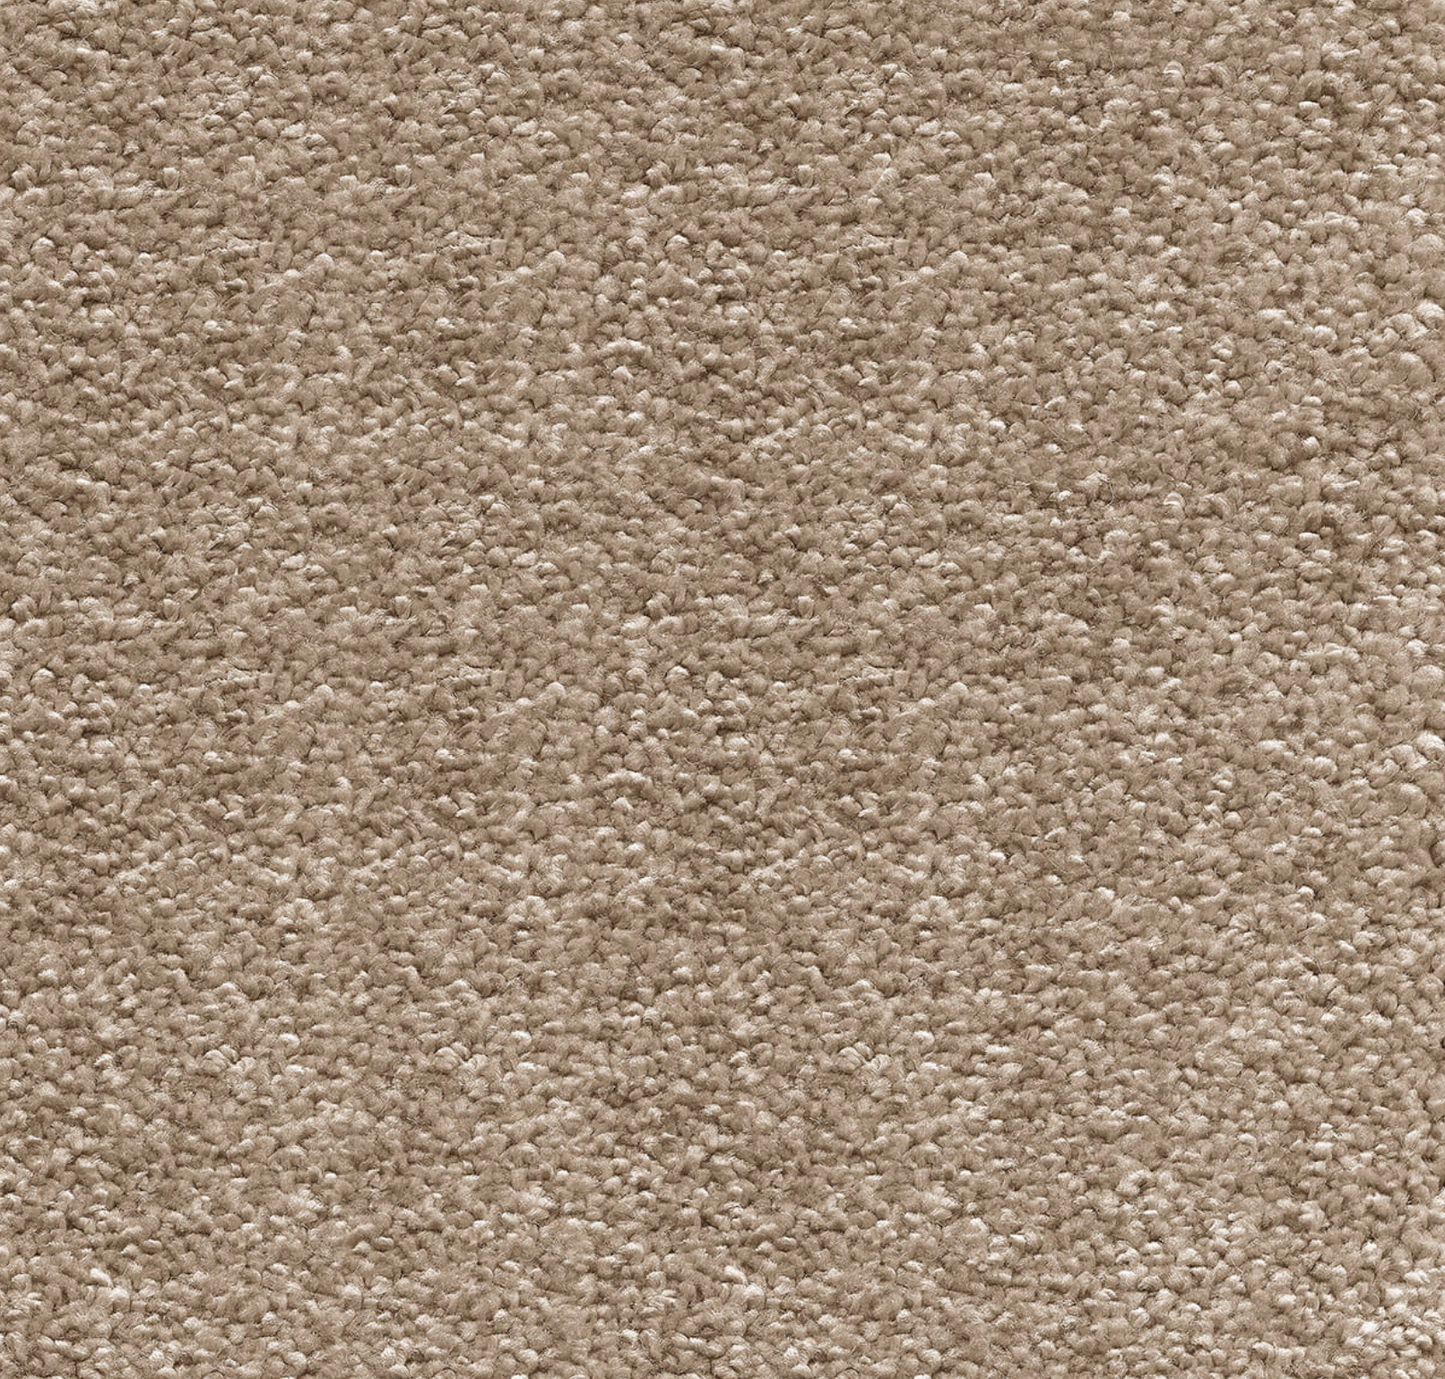 Sirius Sandy Beach 3.7 x 2.8 m Roll End Carpet